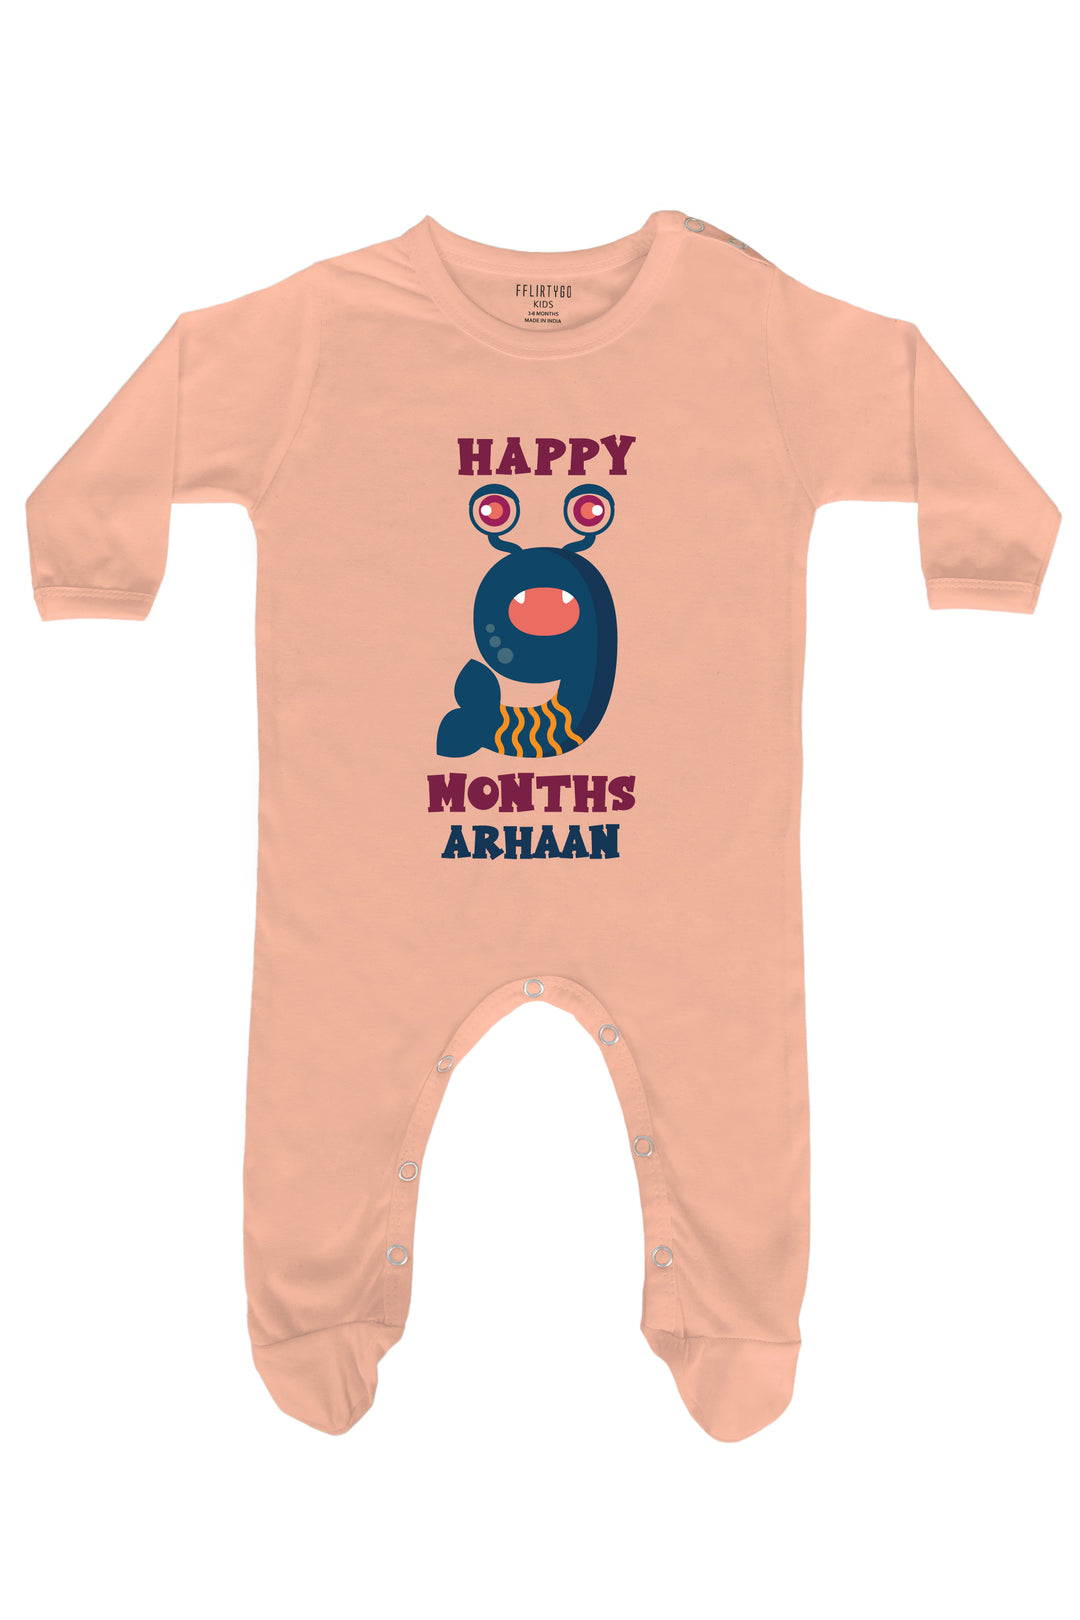 Nine Month Birthday Baby Romper | Onesies w/ Custom Name